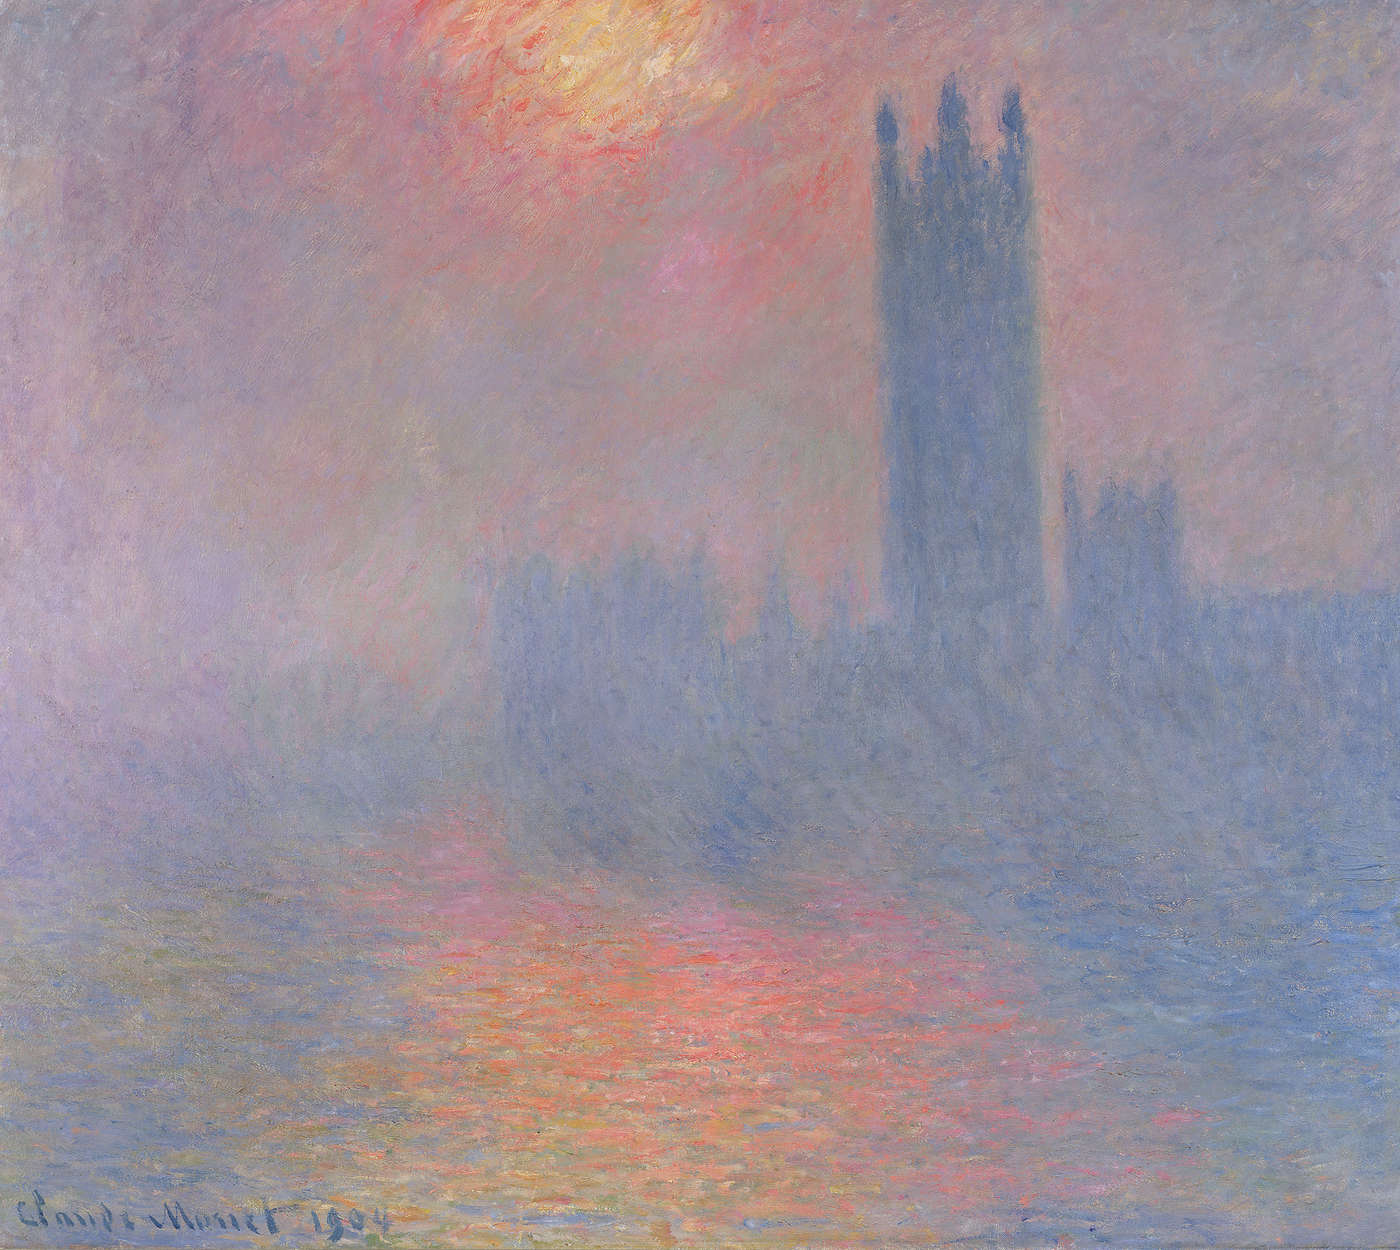             Fotomurali "Il Parlamento di Londra con il sole che attraversa la nebbia" di Claude Monet
        